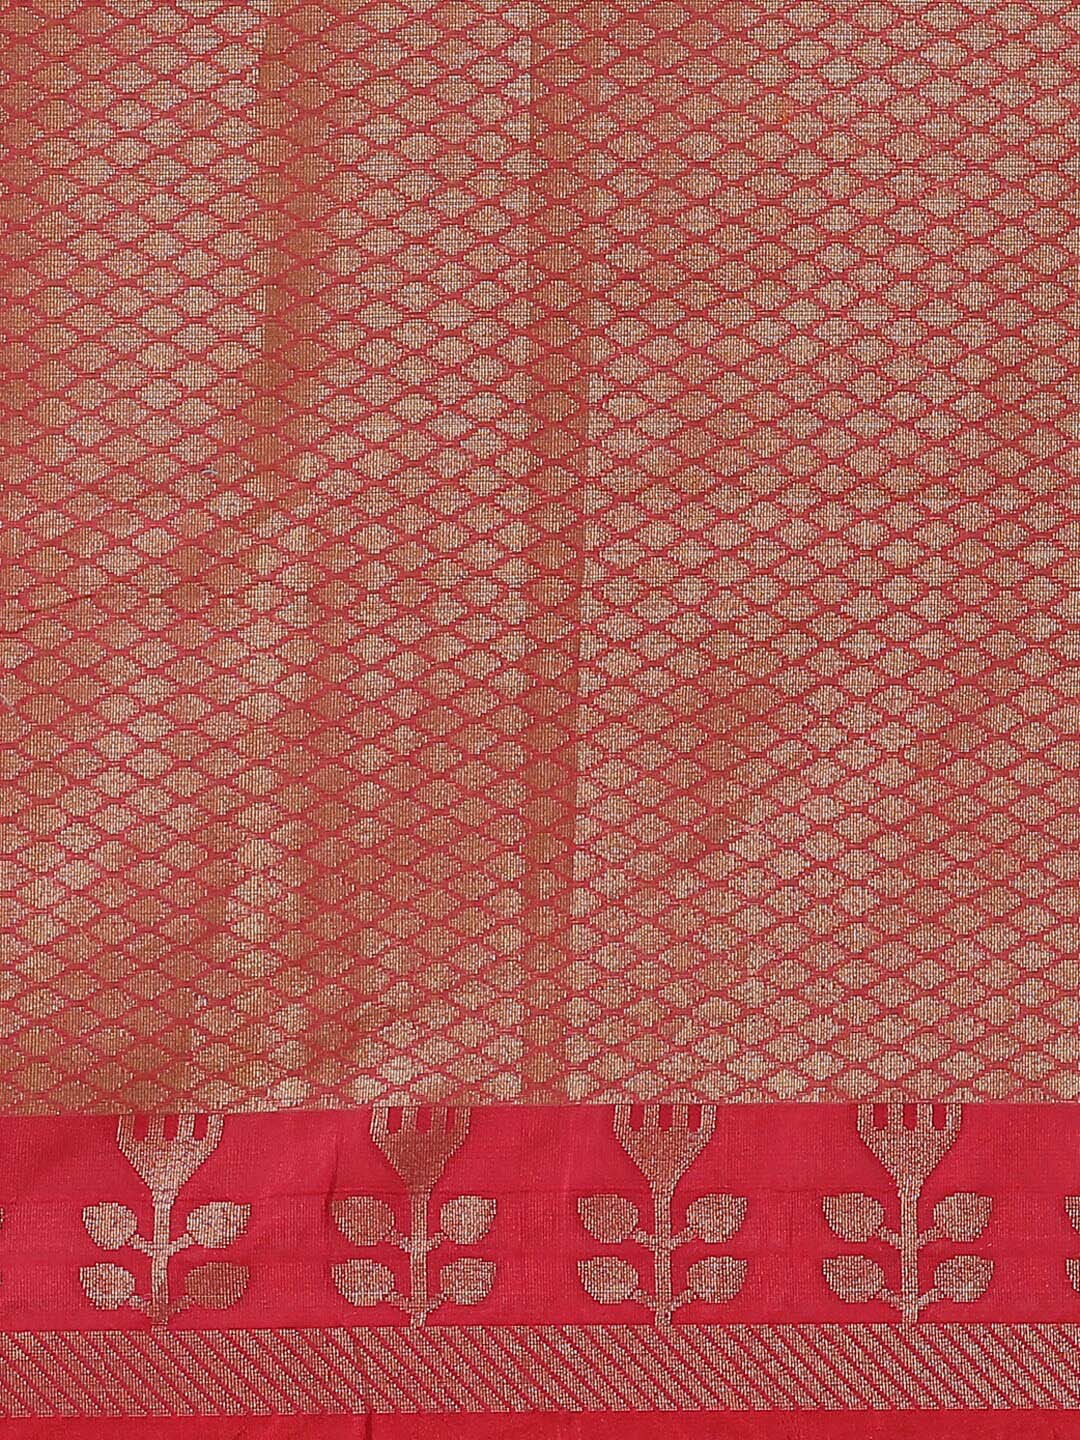 Indethnic Banarasi Cream Woven Design Daily Wear Saree - Saree Detail View